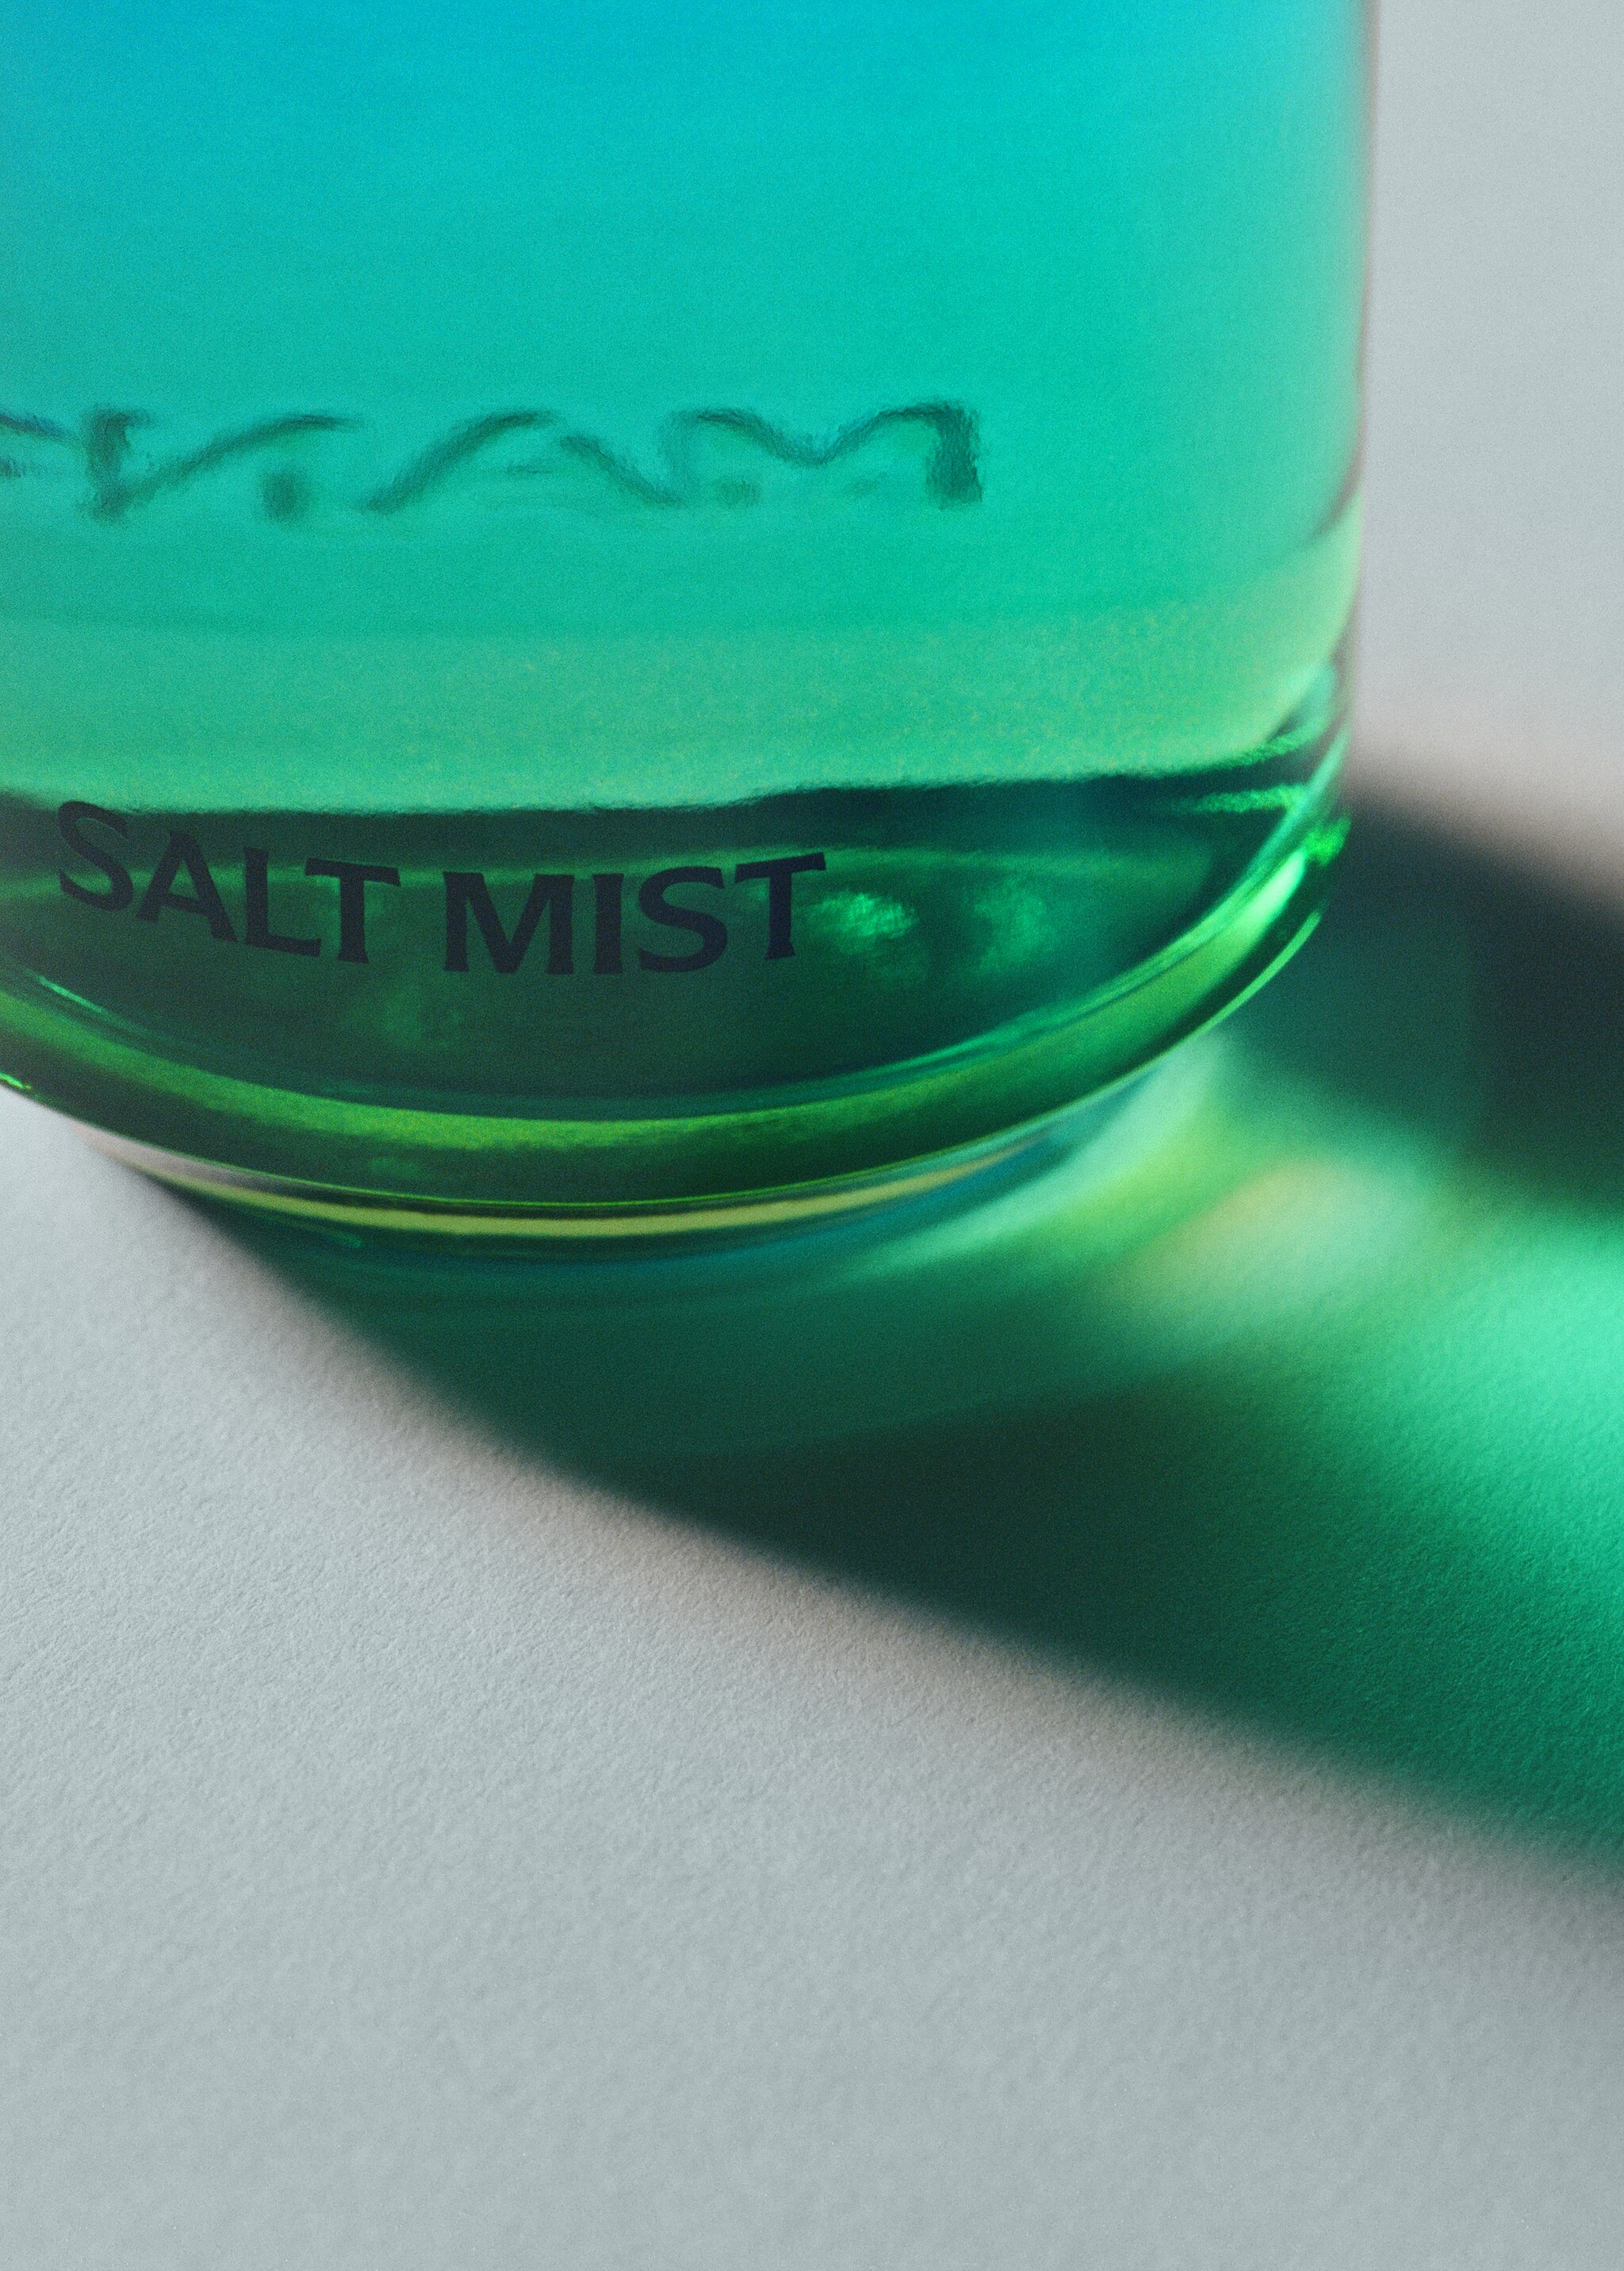 Parfum Salt Mist 100 ml - Détail de l'article 2